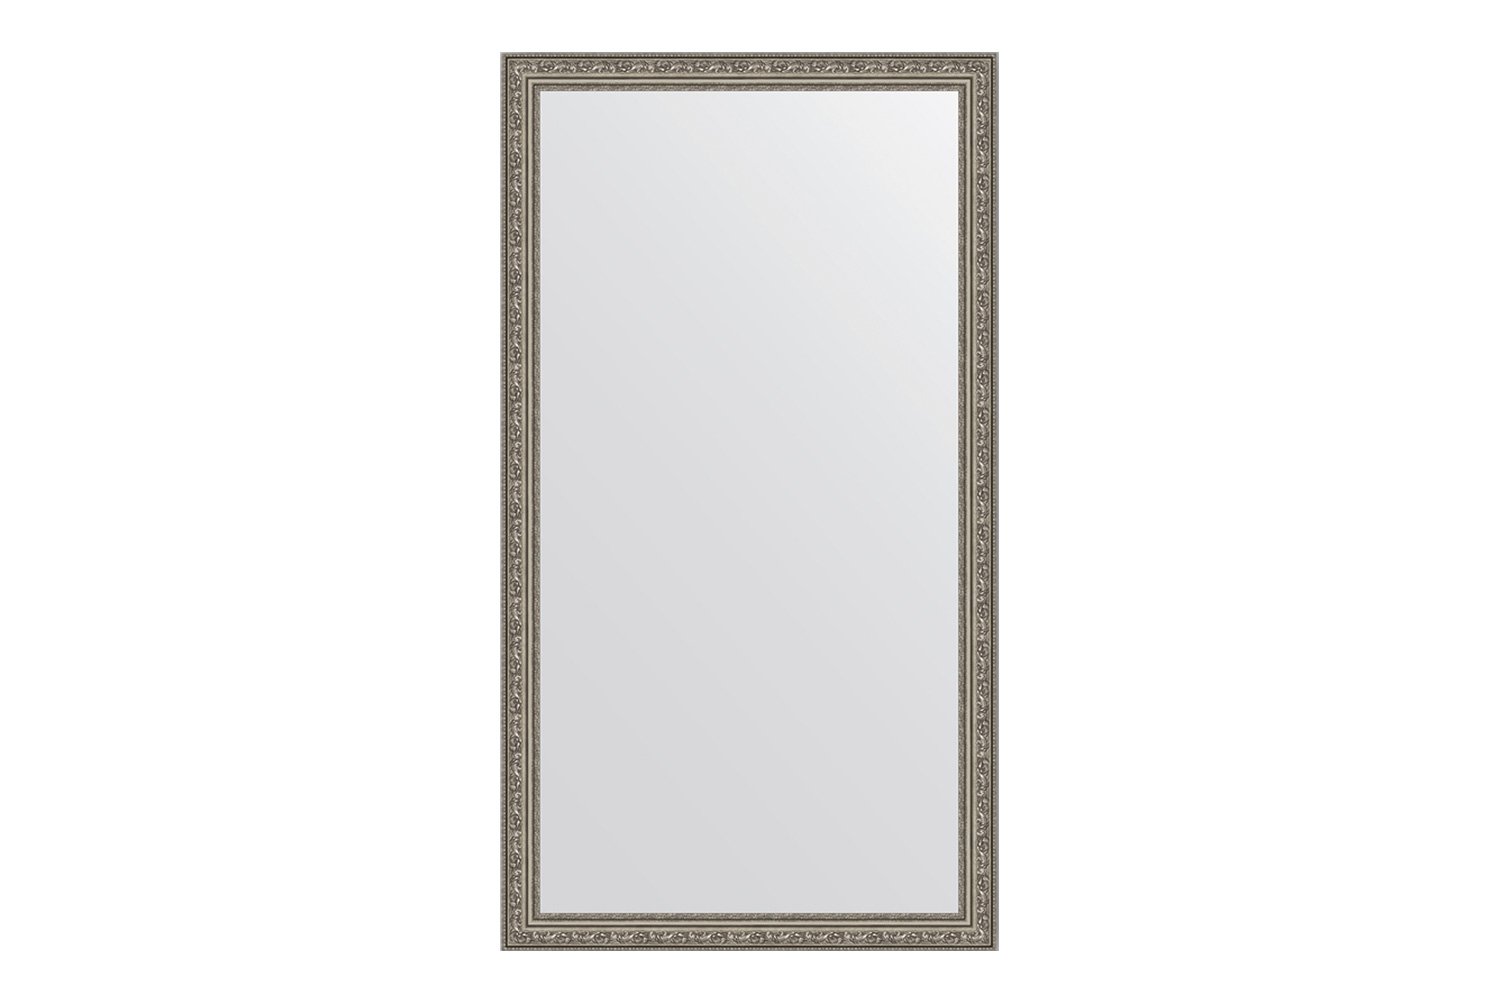 Зеркало в раме виньетка состаренное серебро